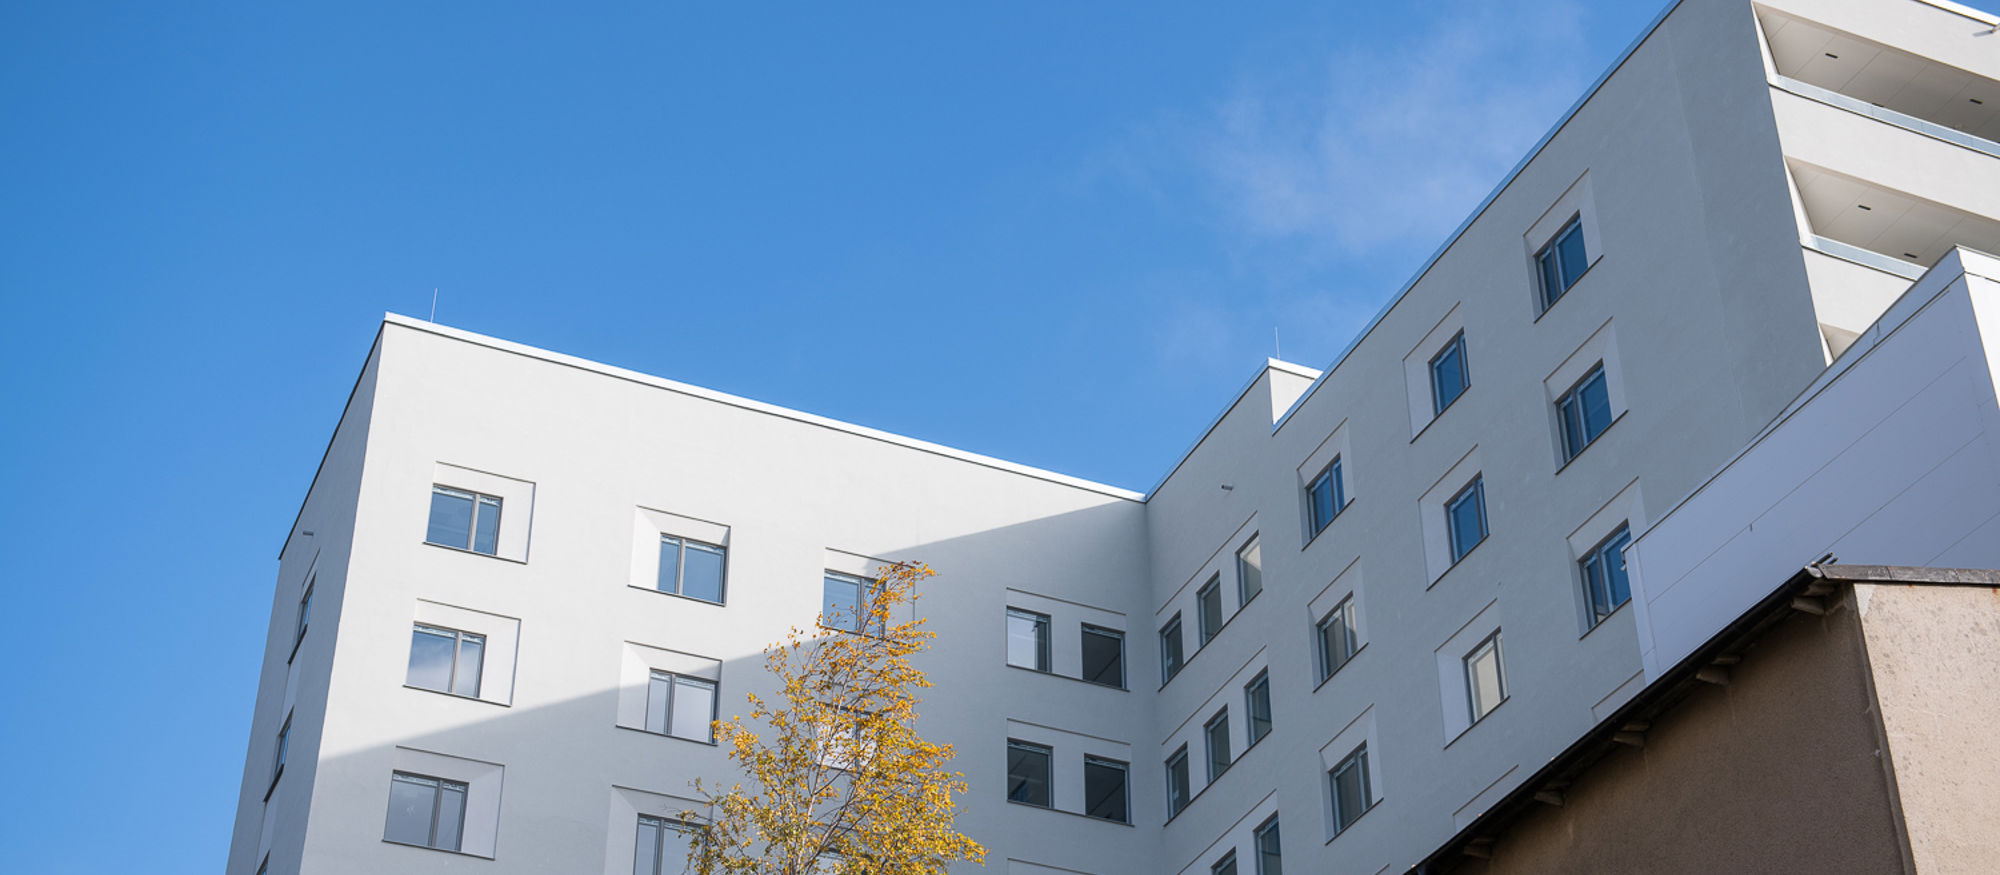 Södersjukhuset. Vit flervåningsbyggnad mot klarblå himmel